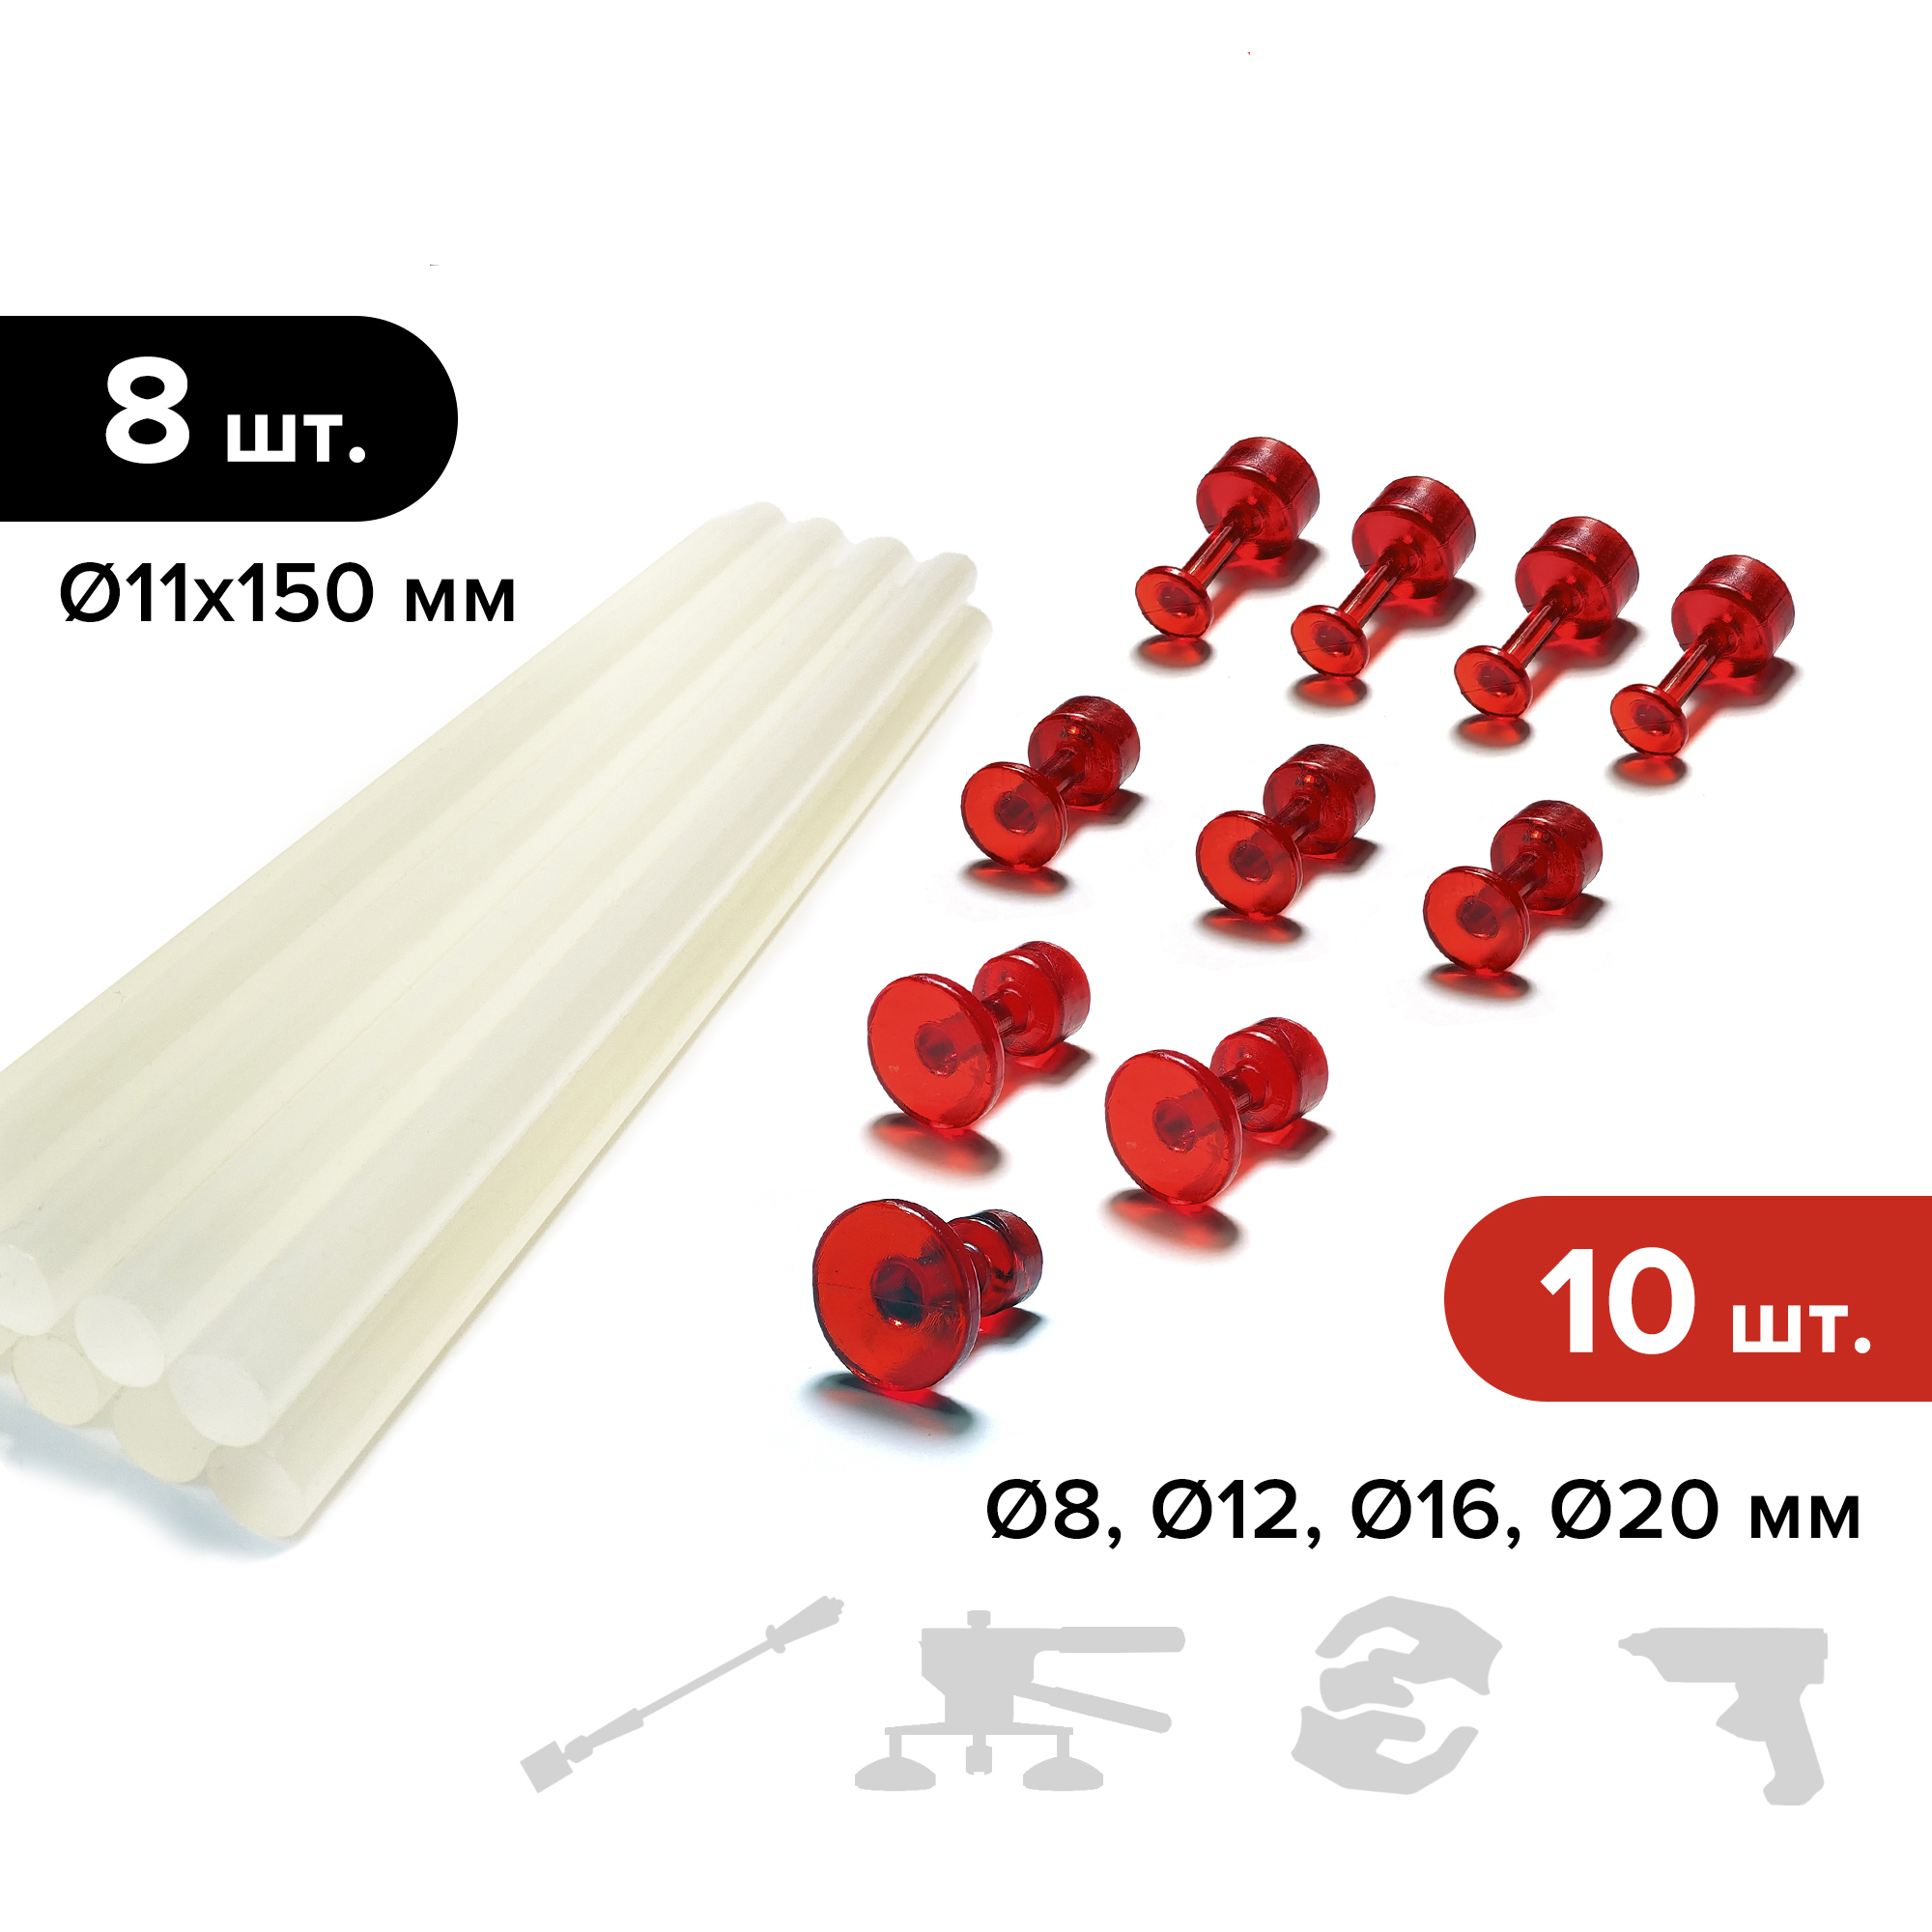 Клеевые адаптеры (грибки) PDR Выпрямитель VGRAD RED, 10 шт. + горячий клей MIDIAR, 8 шт.